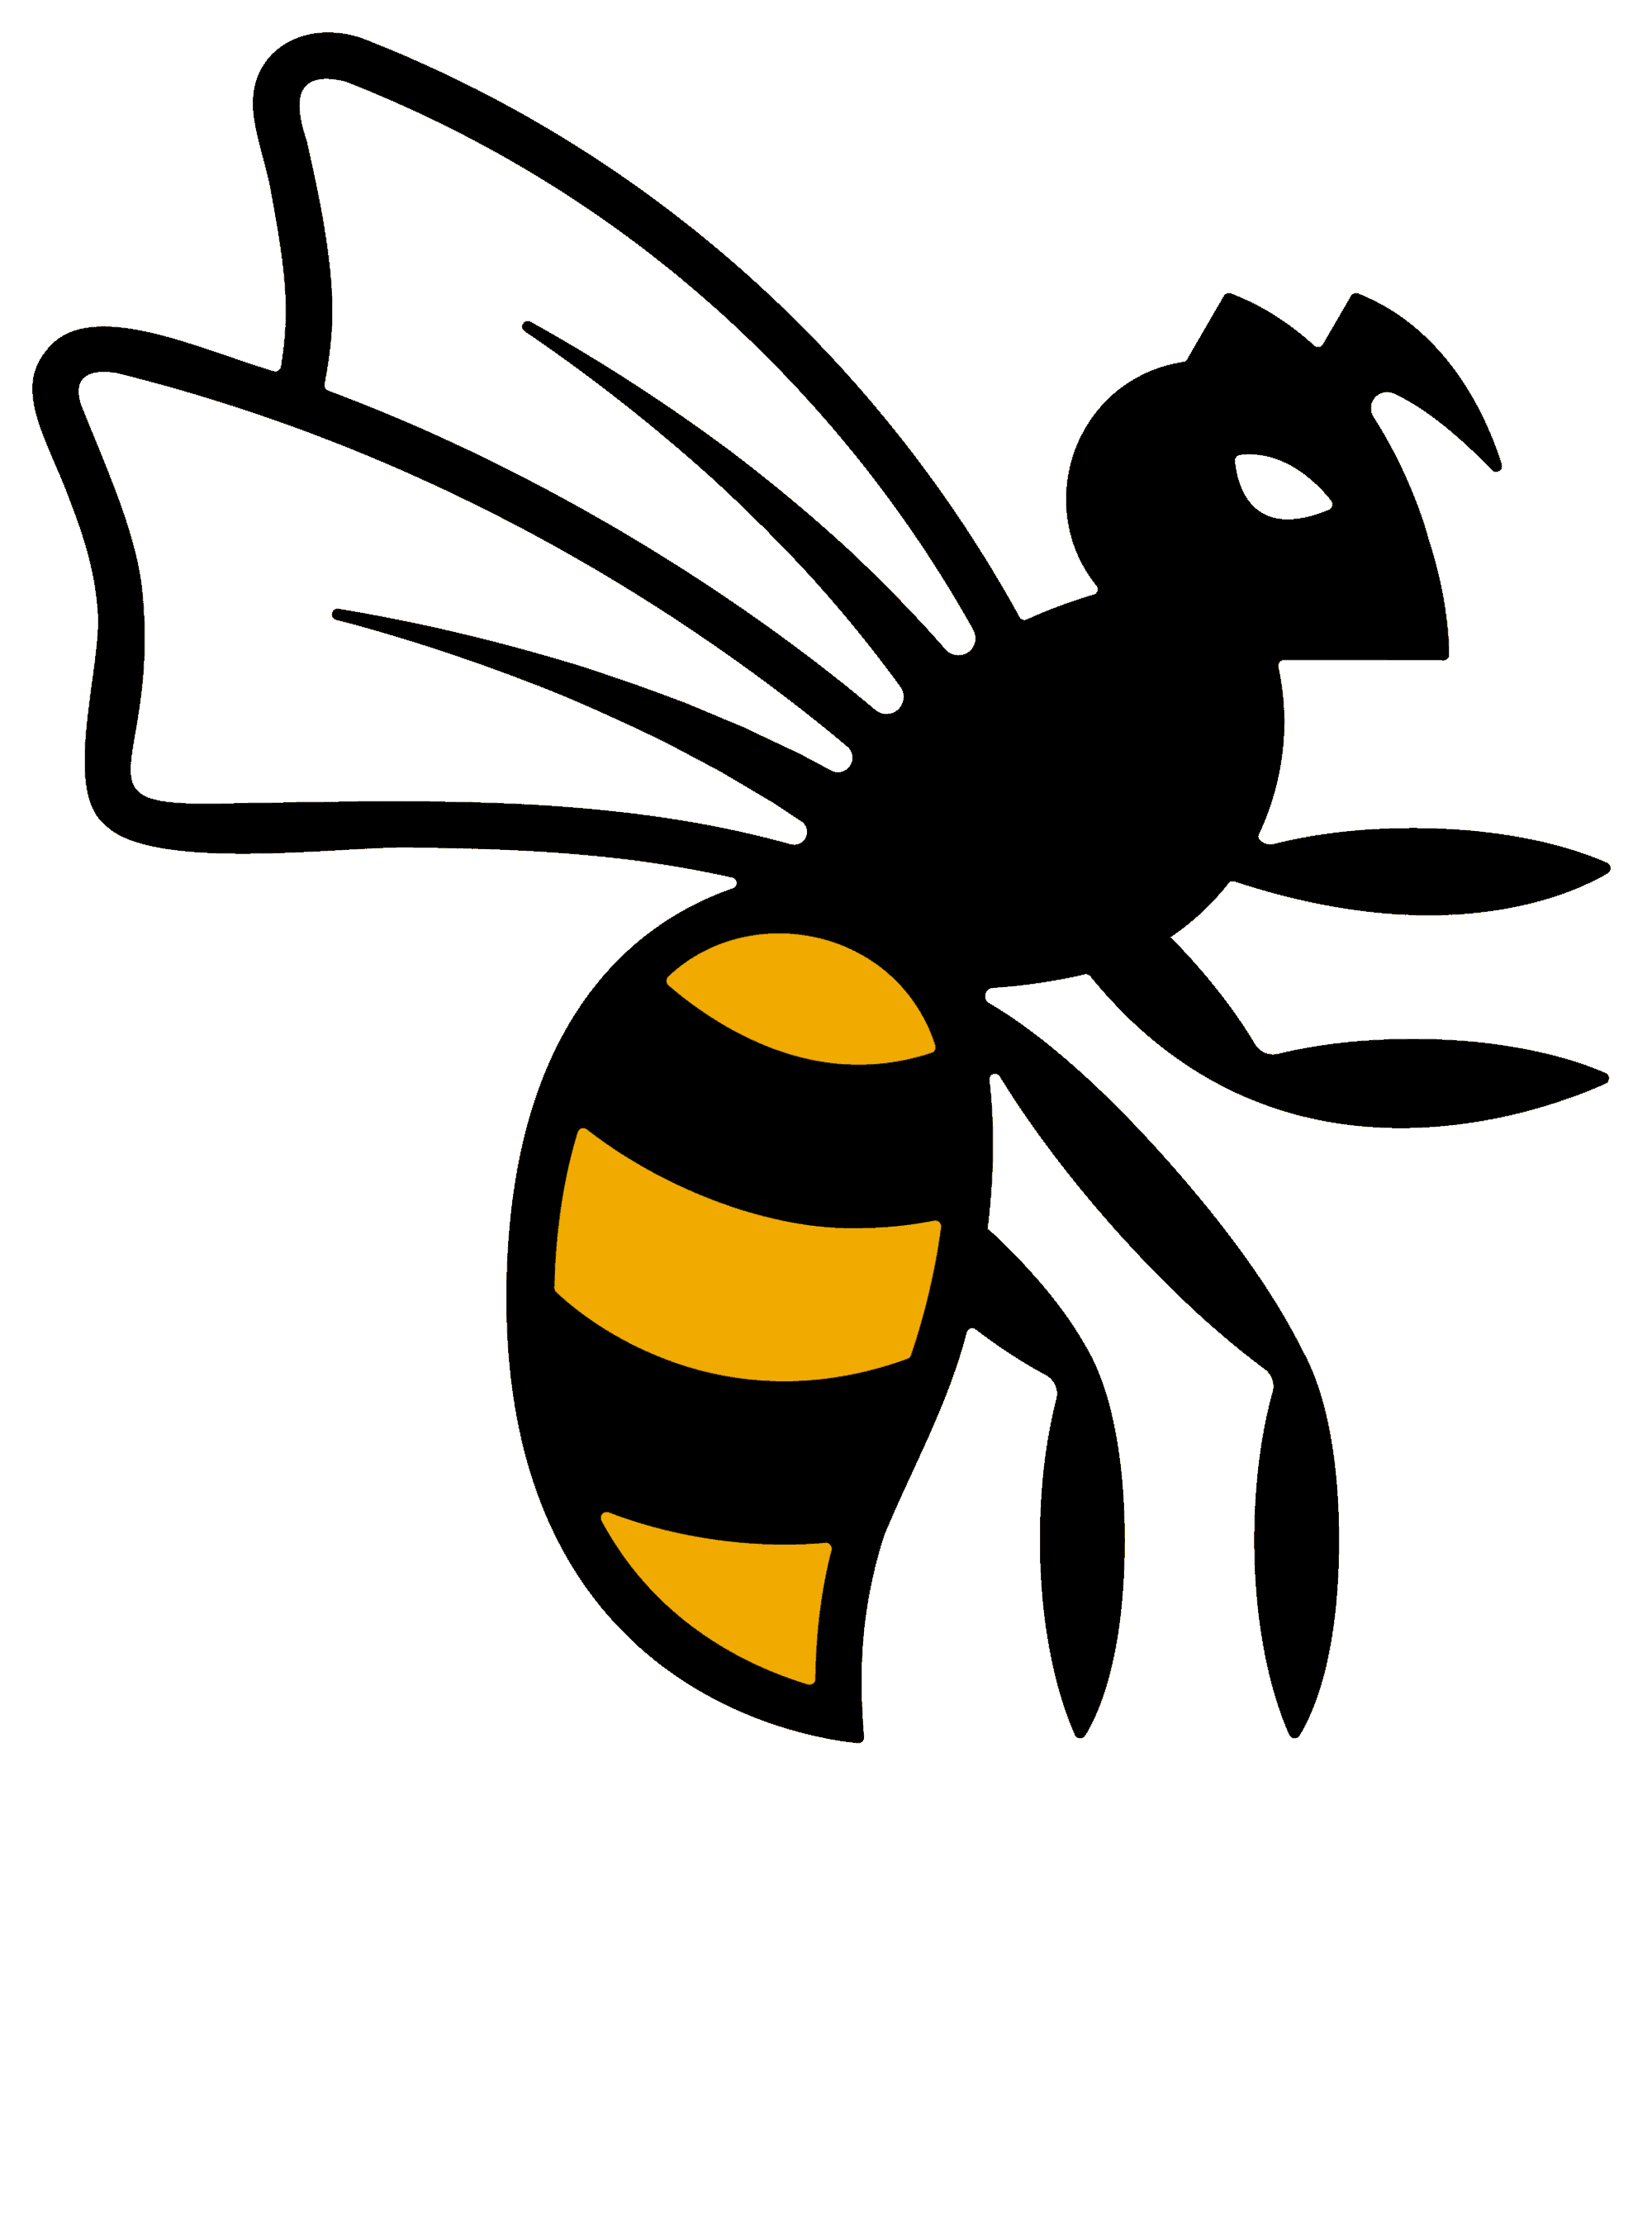 Wasps-logo